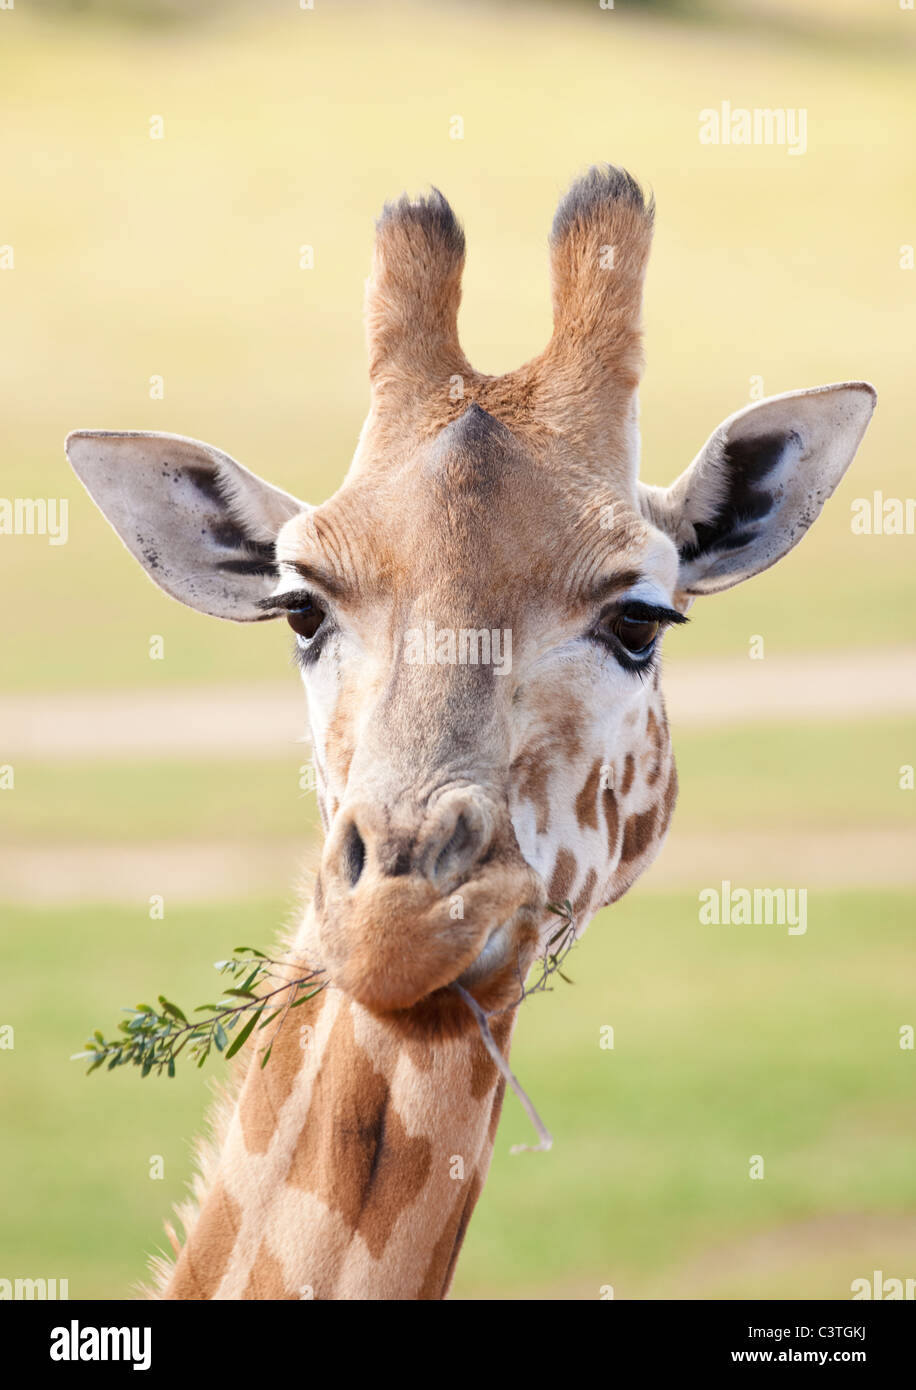 Afrikanische Giraffe in Natur, in der Nähe Stockfoto